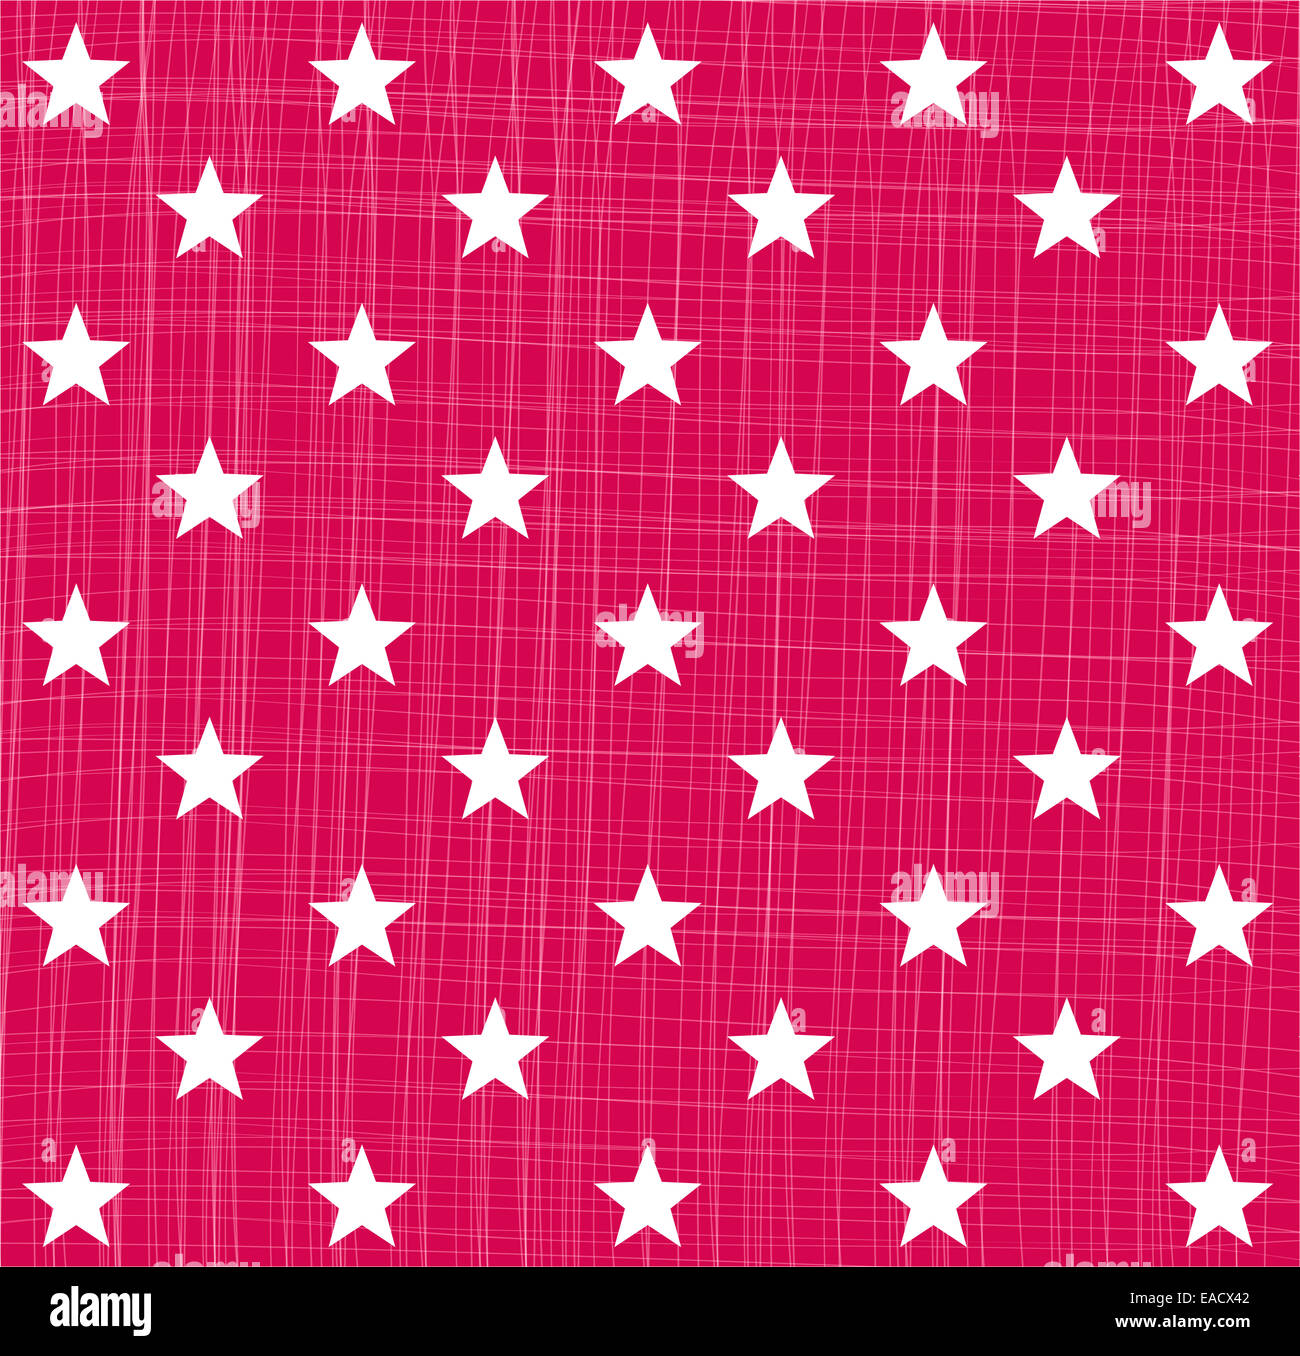 Stern Sterne Sternmuster Muster patrón rosa Sternenmuster Kontur Struktur Hintergrund Weihnachten Navidad Heilig Abend Grafik Foto de stock